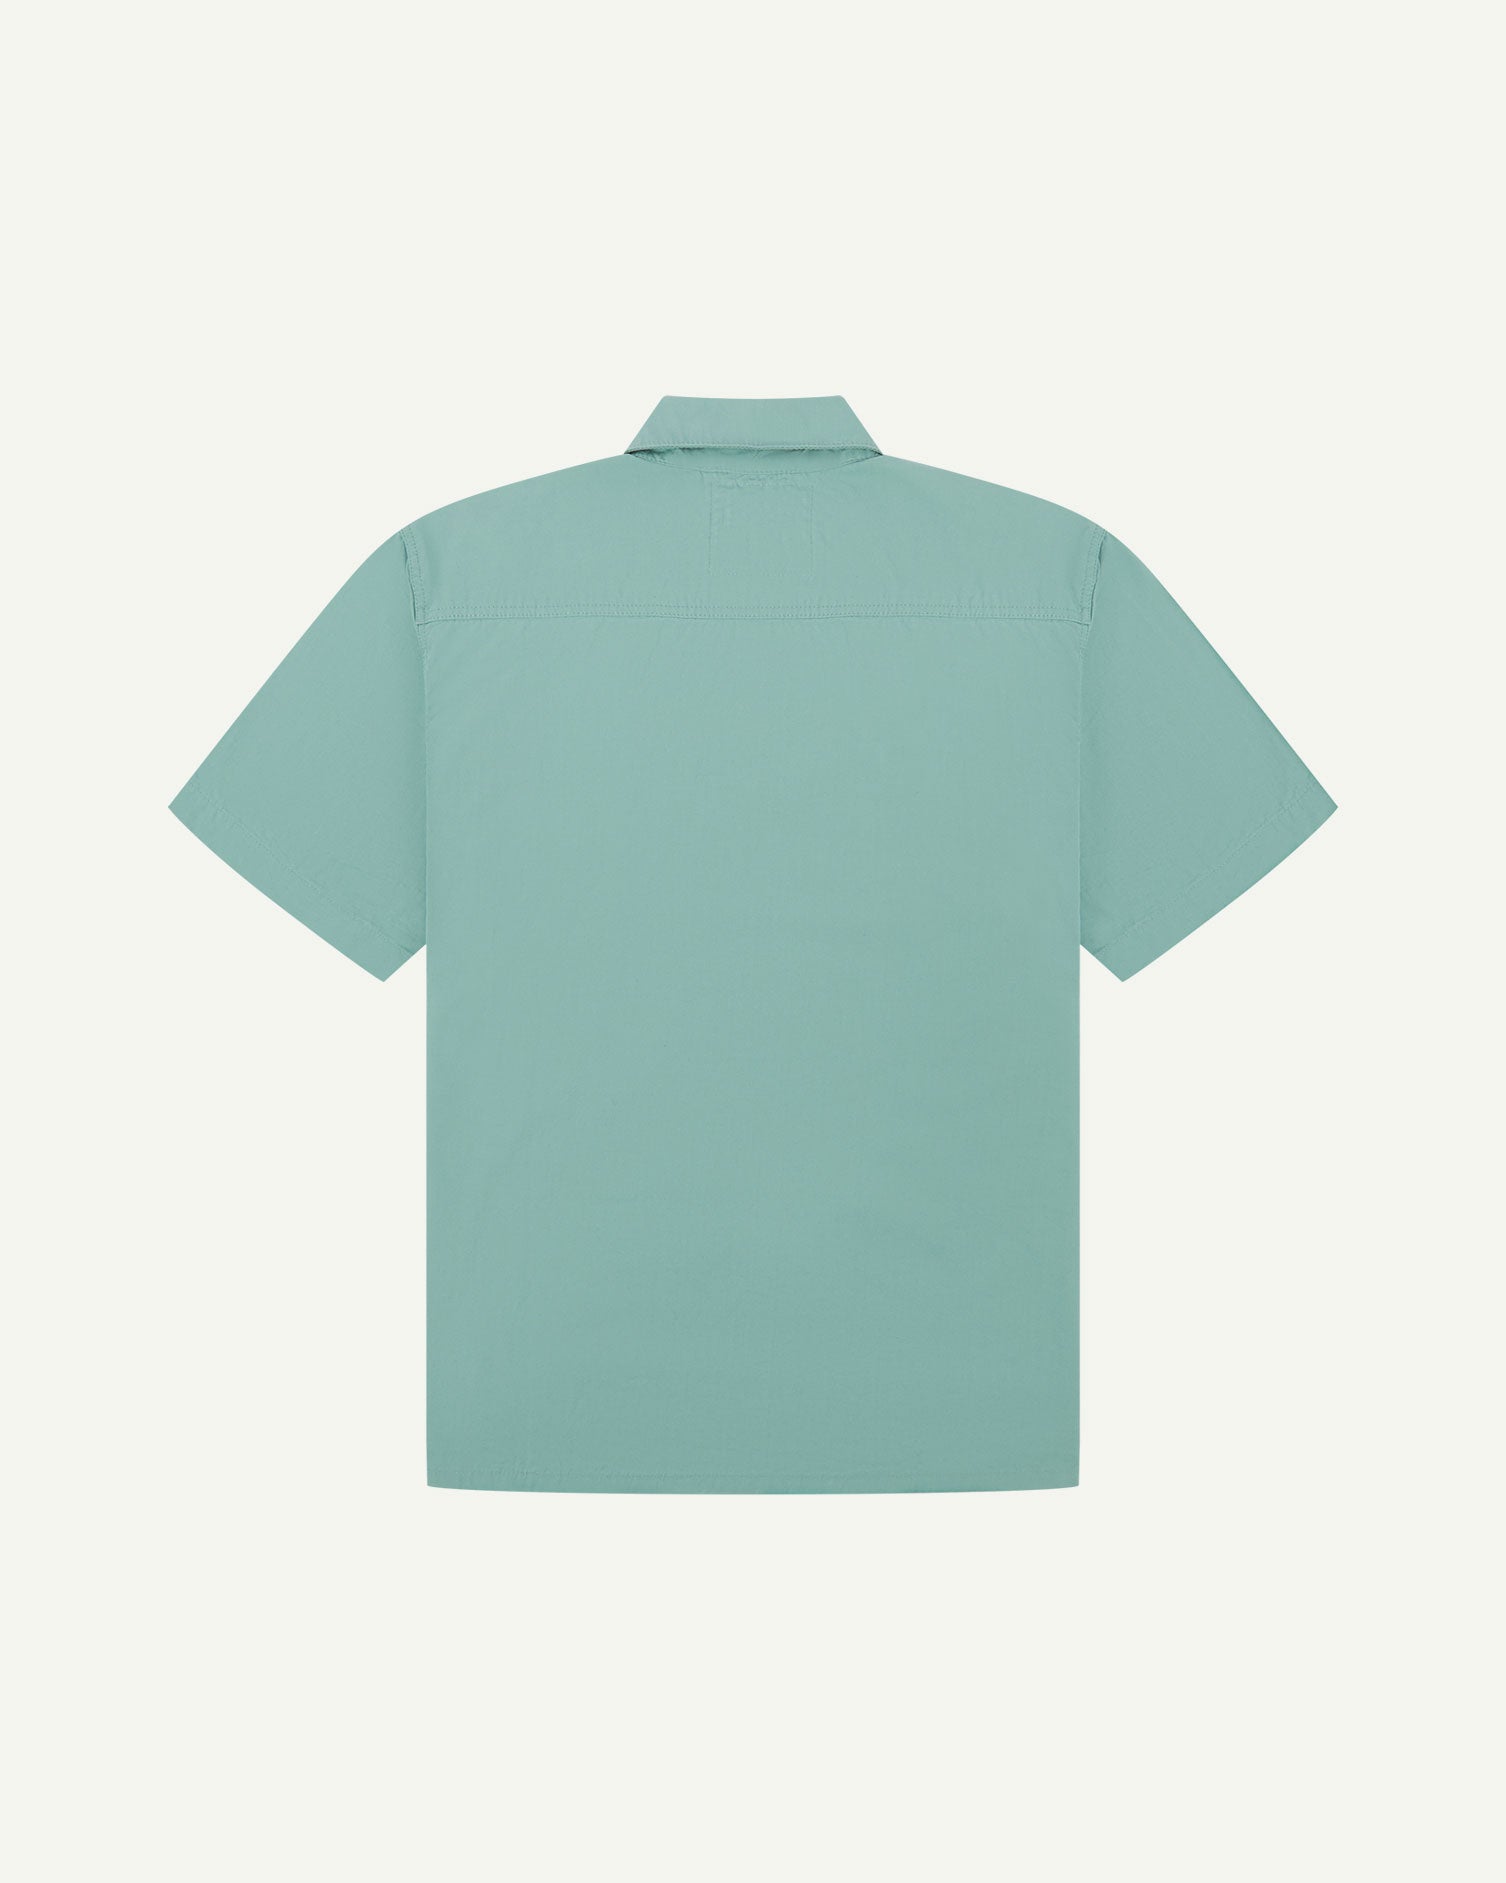 Reverse flat view of eucalyptus-green lightweight short sleeve shirt from Uskees.